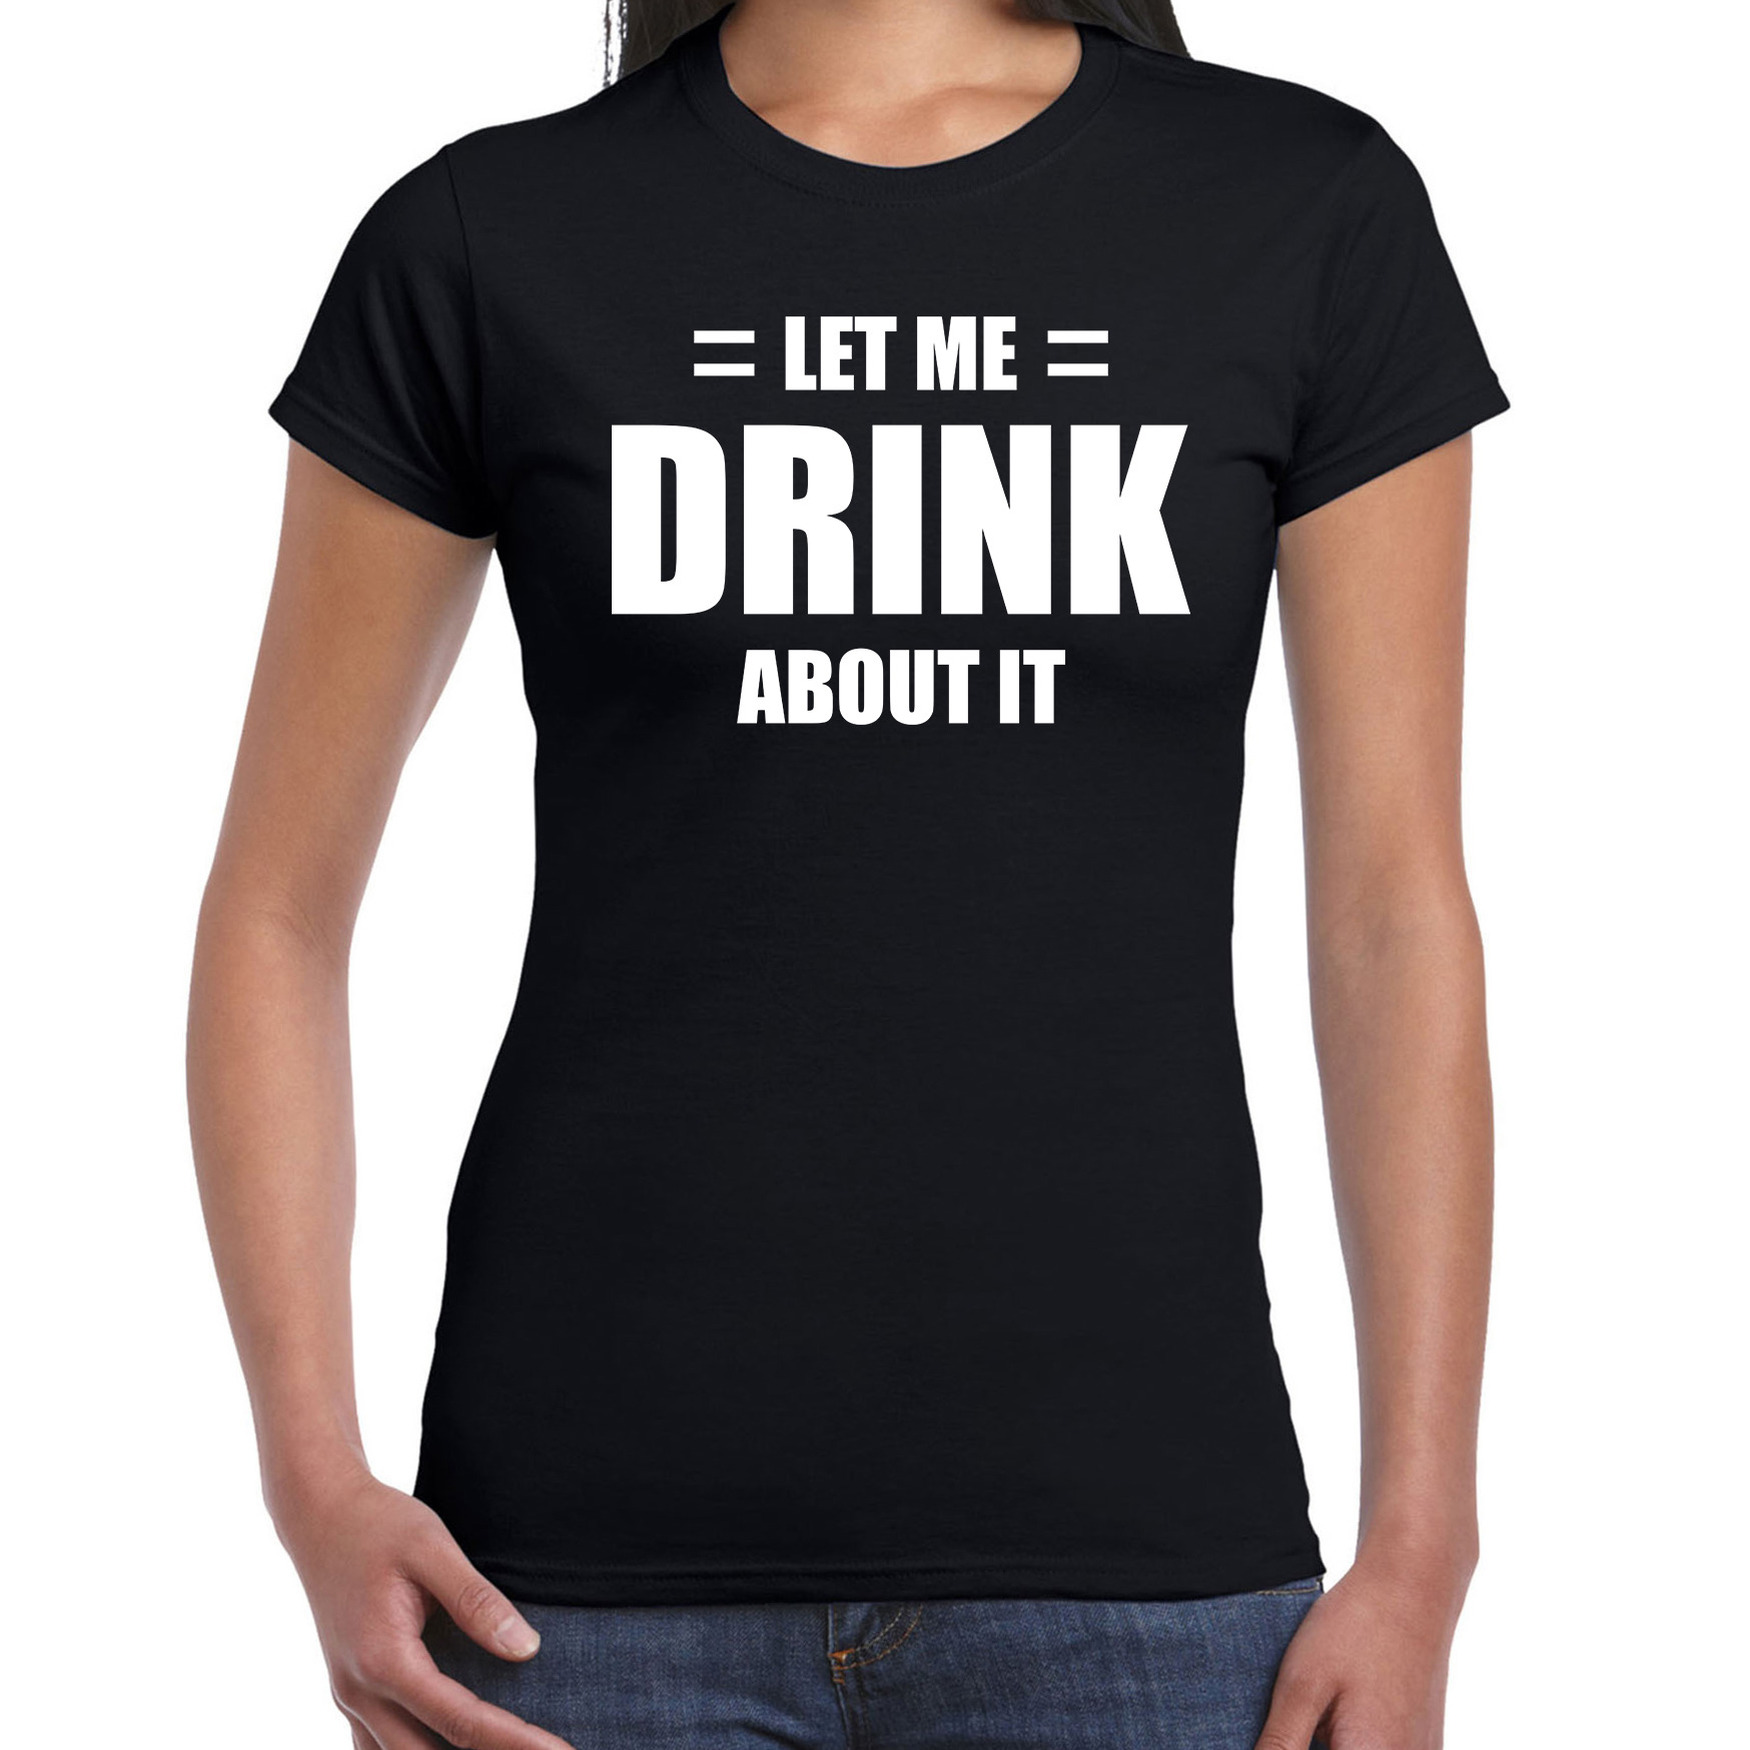 Let me drink about it-Laat me er over drinken drank fun t-shirt zwart voor dames